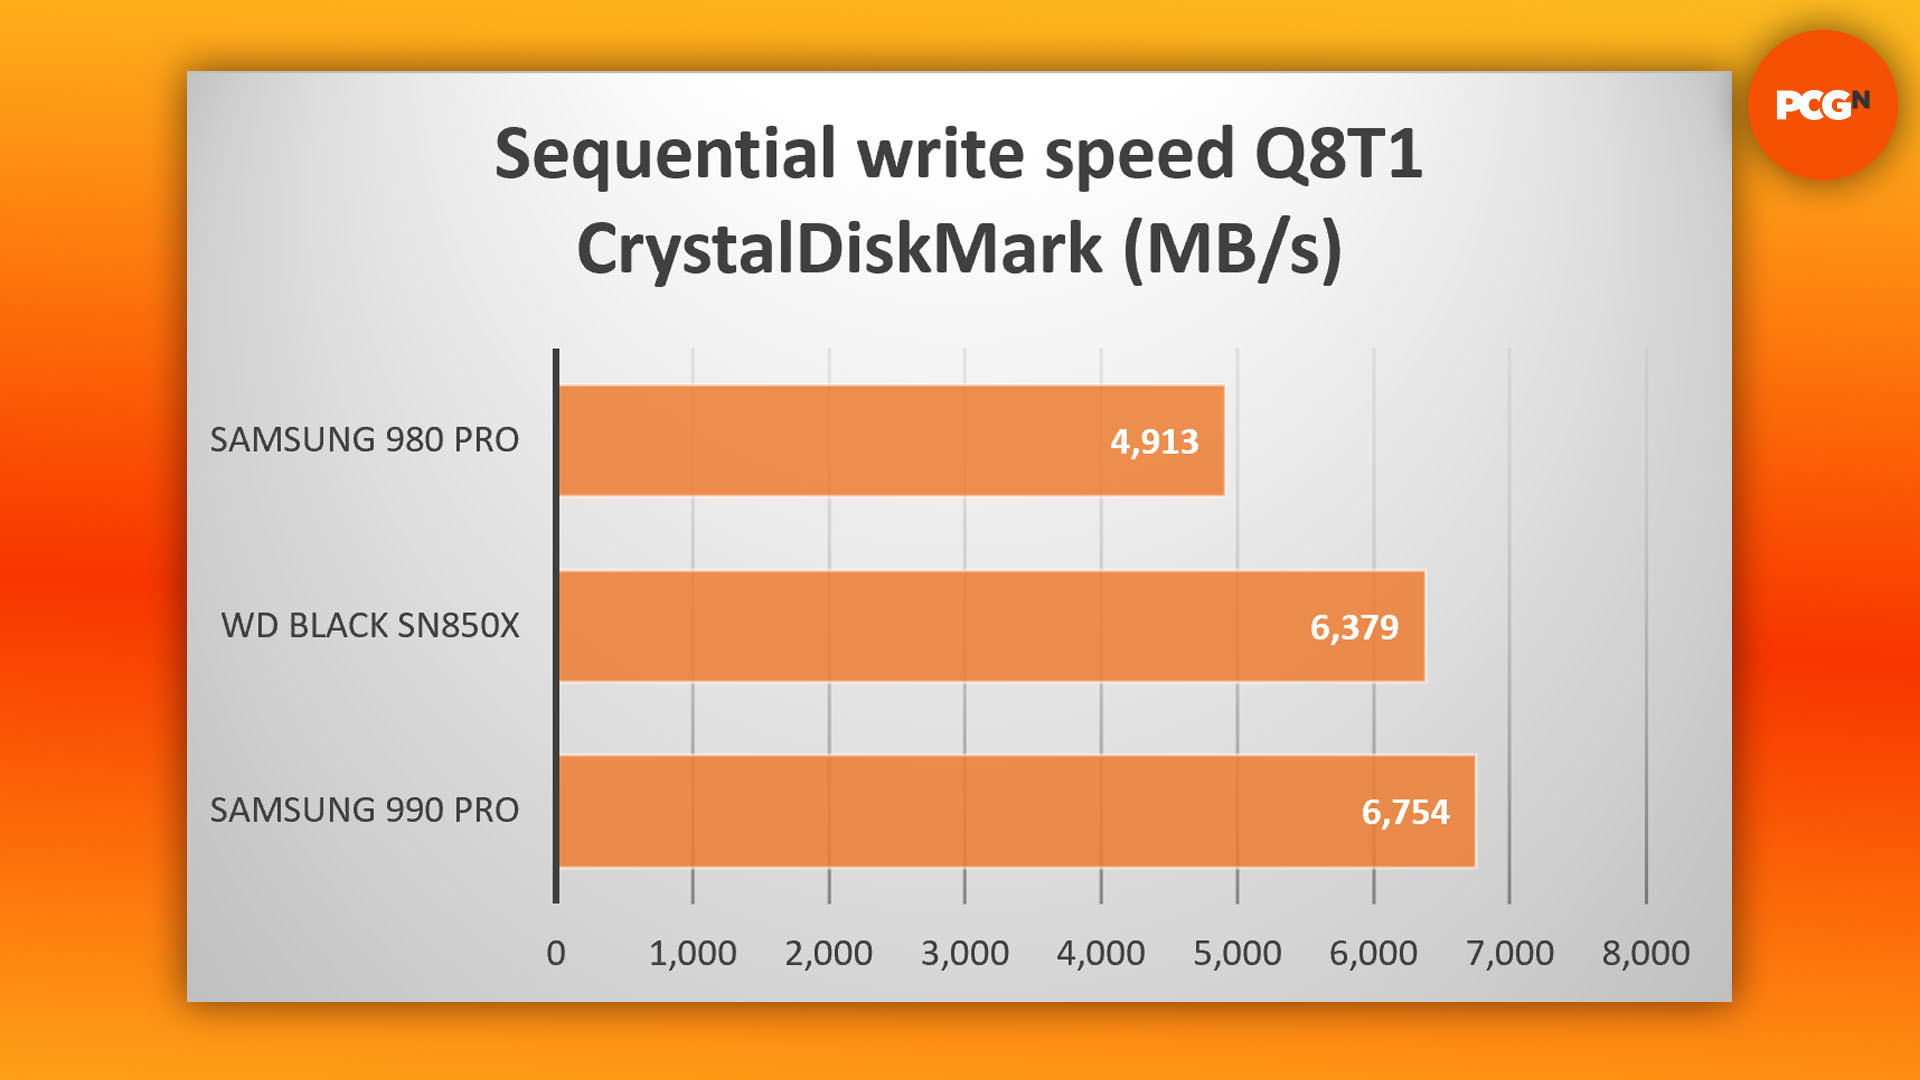 Test du WD Black SN850X : graphique des résultats de la vitesse d'écriture séquentielle CrystalDiskMark